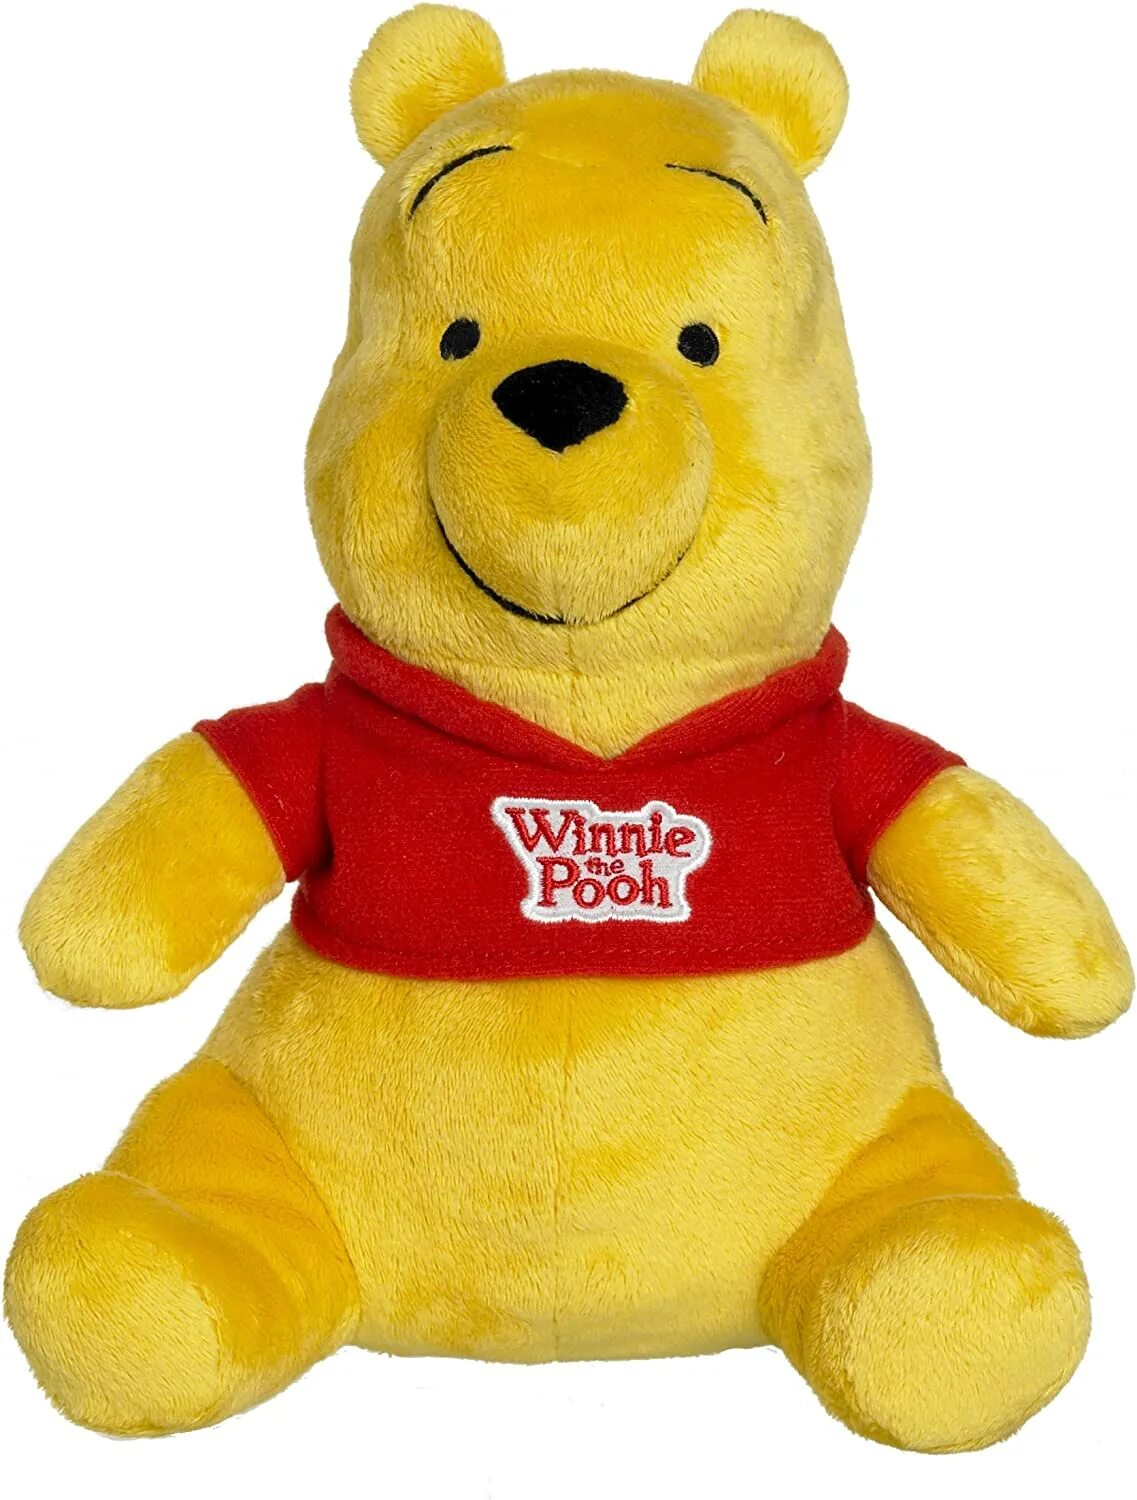 Плюшевый пух. Игрушка Winnie the Pooh. Винни пух Дисней игрушка. Мягкая игрушка Winnie the Pooh. Винни пух мягкая игрушка Disney.